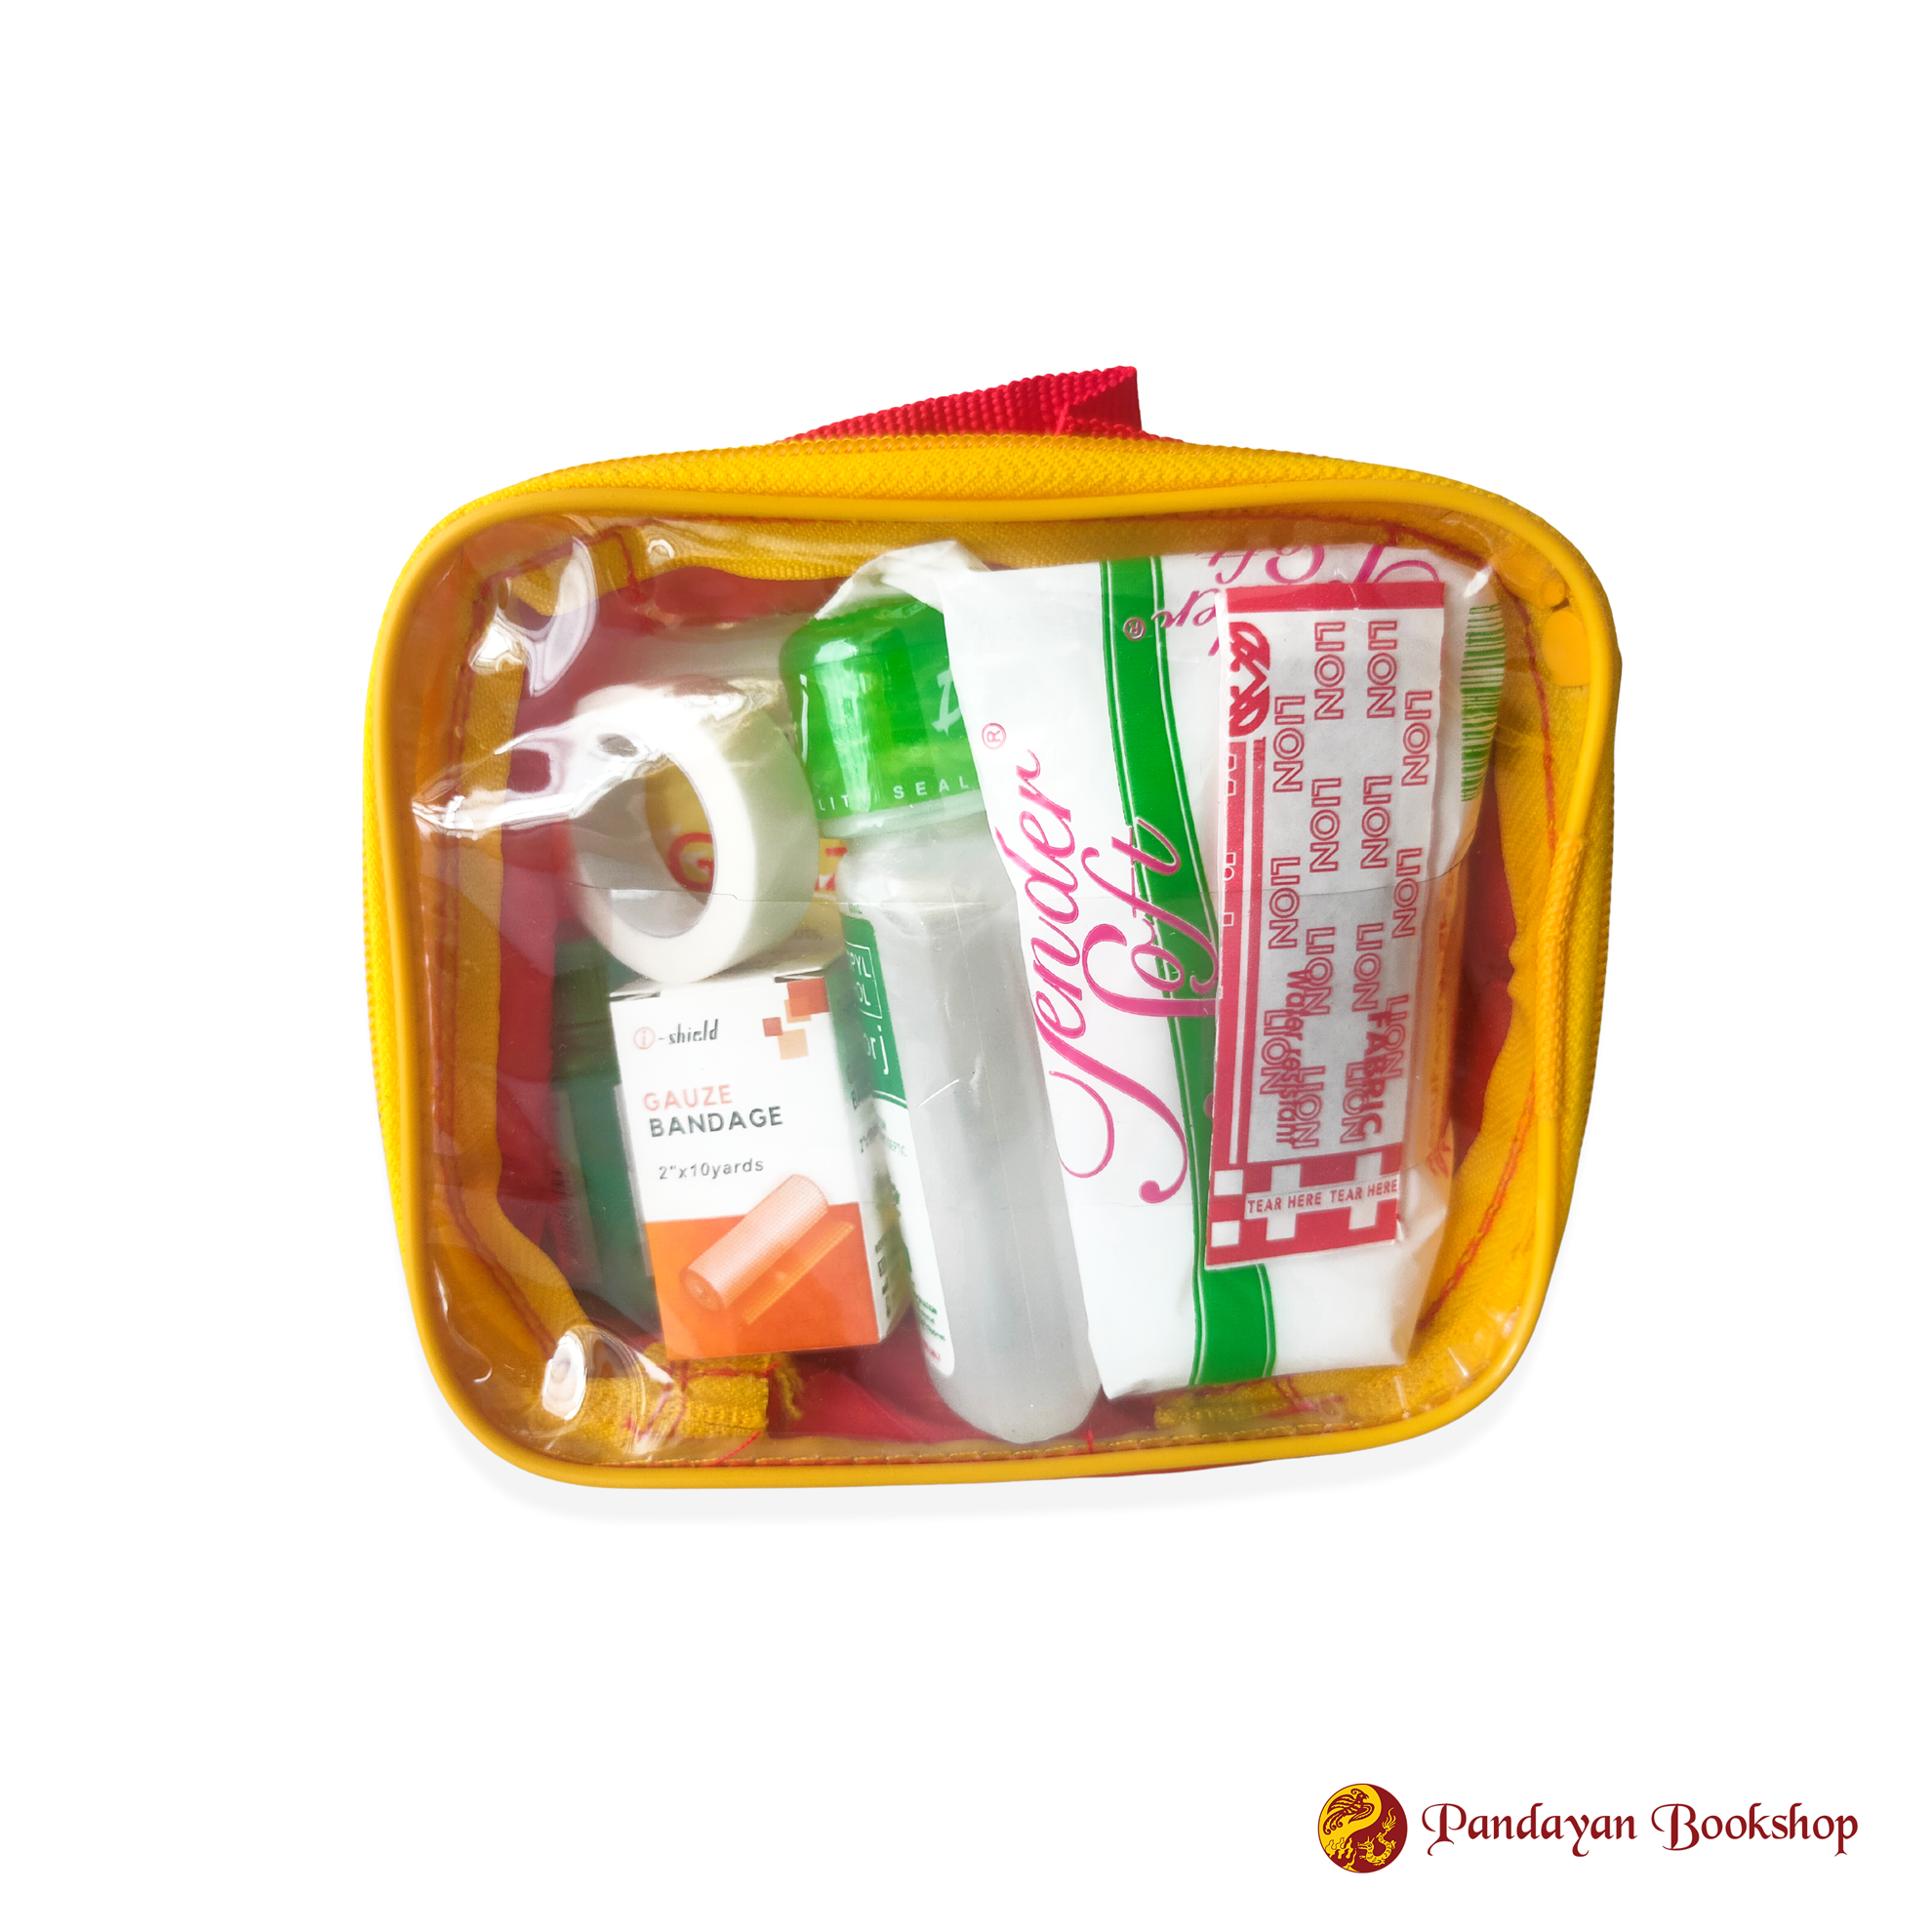 Pandayan First Aid Kit